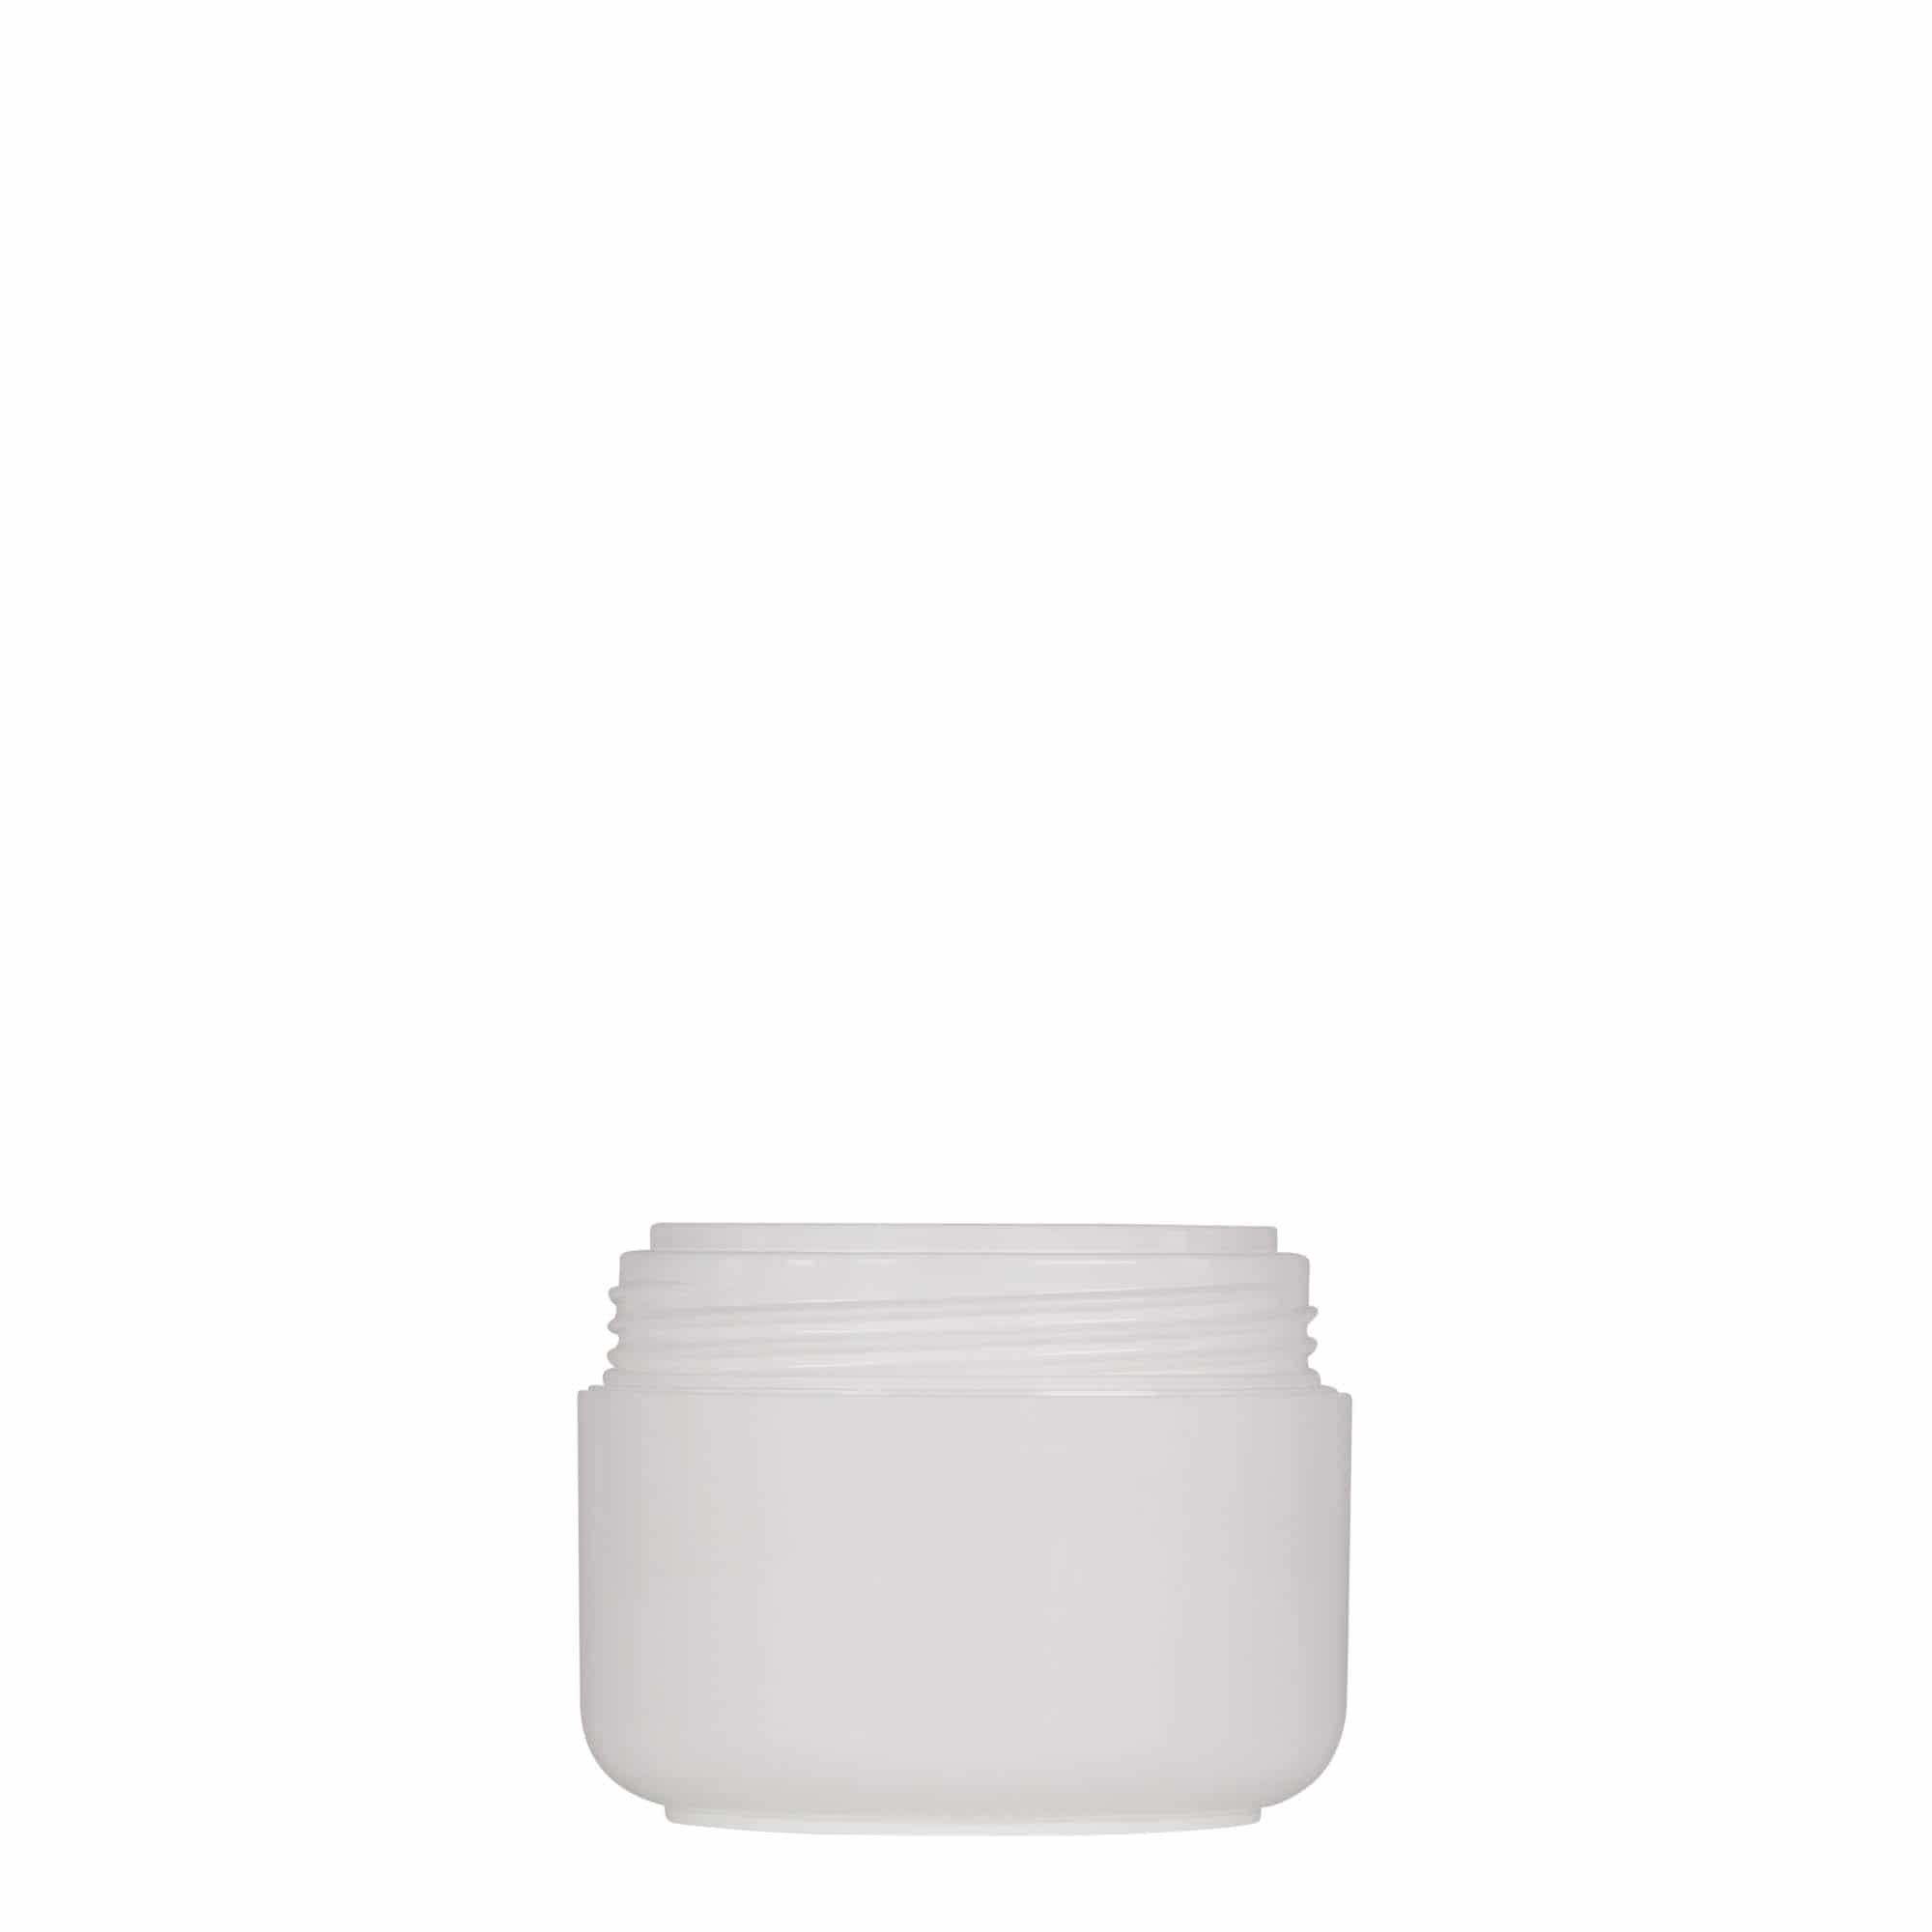 50 ml plastic jar 'Bianca', PP, white, closure: screw cap